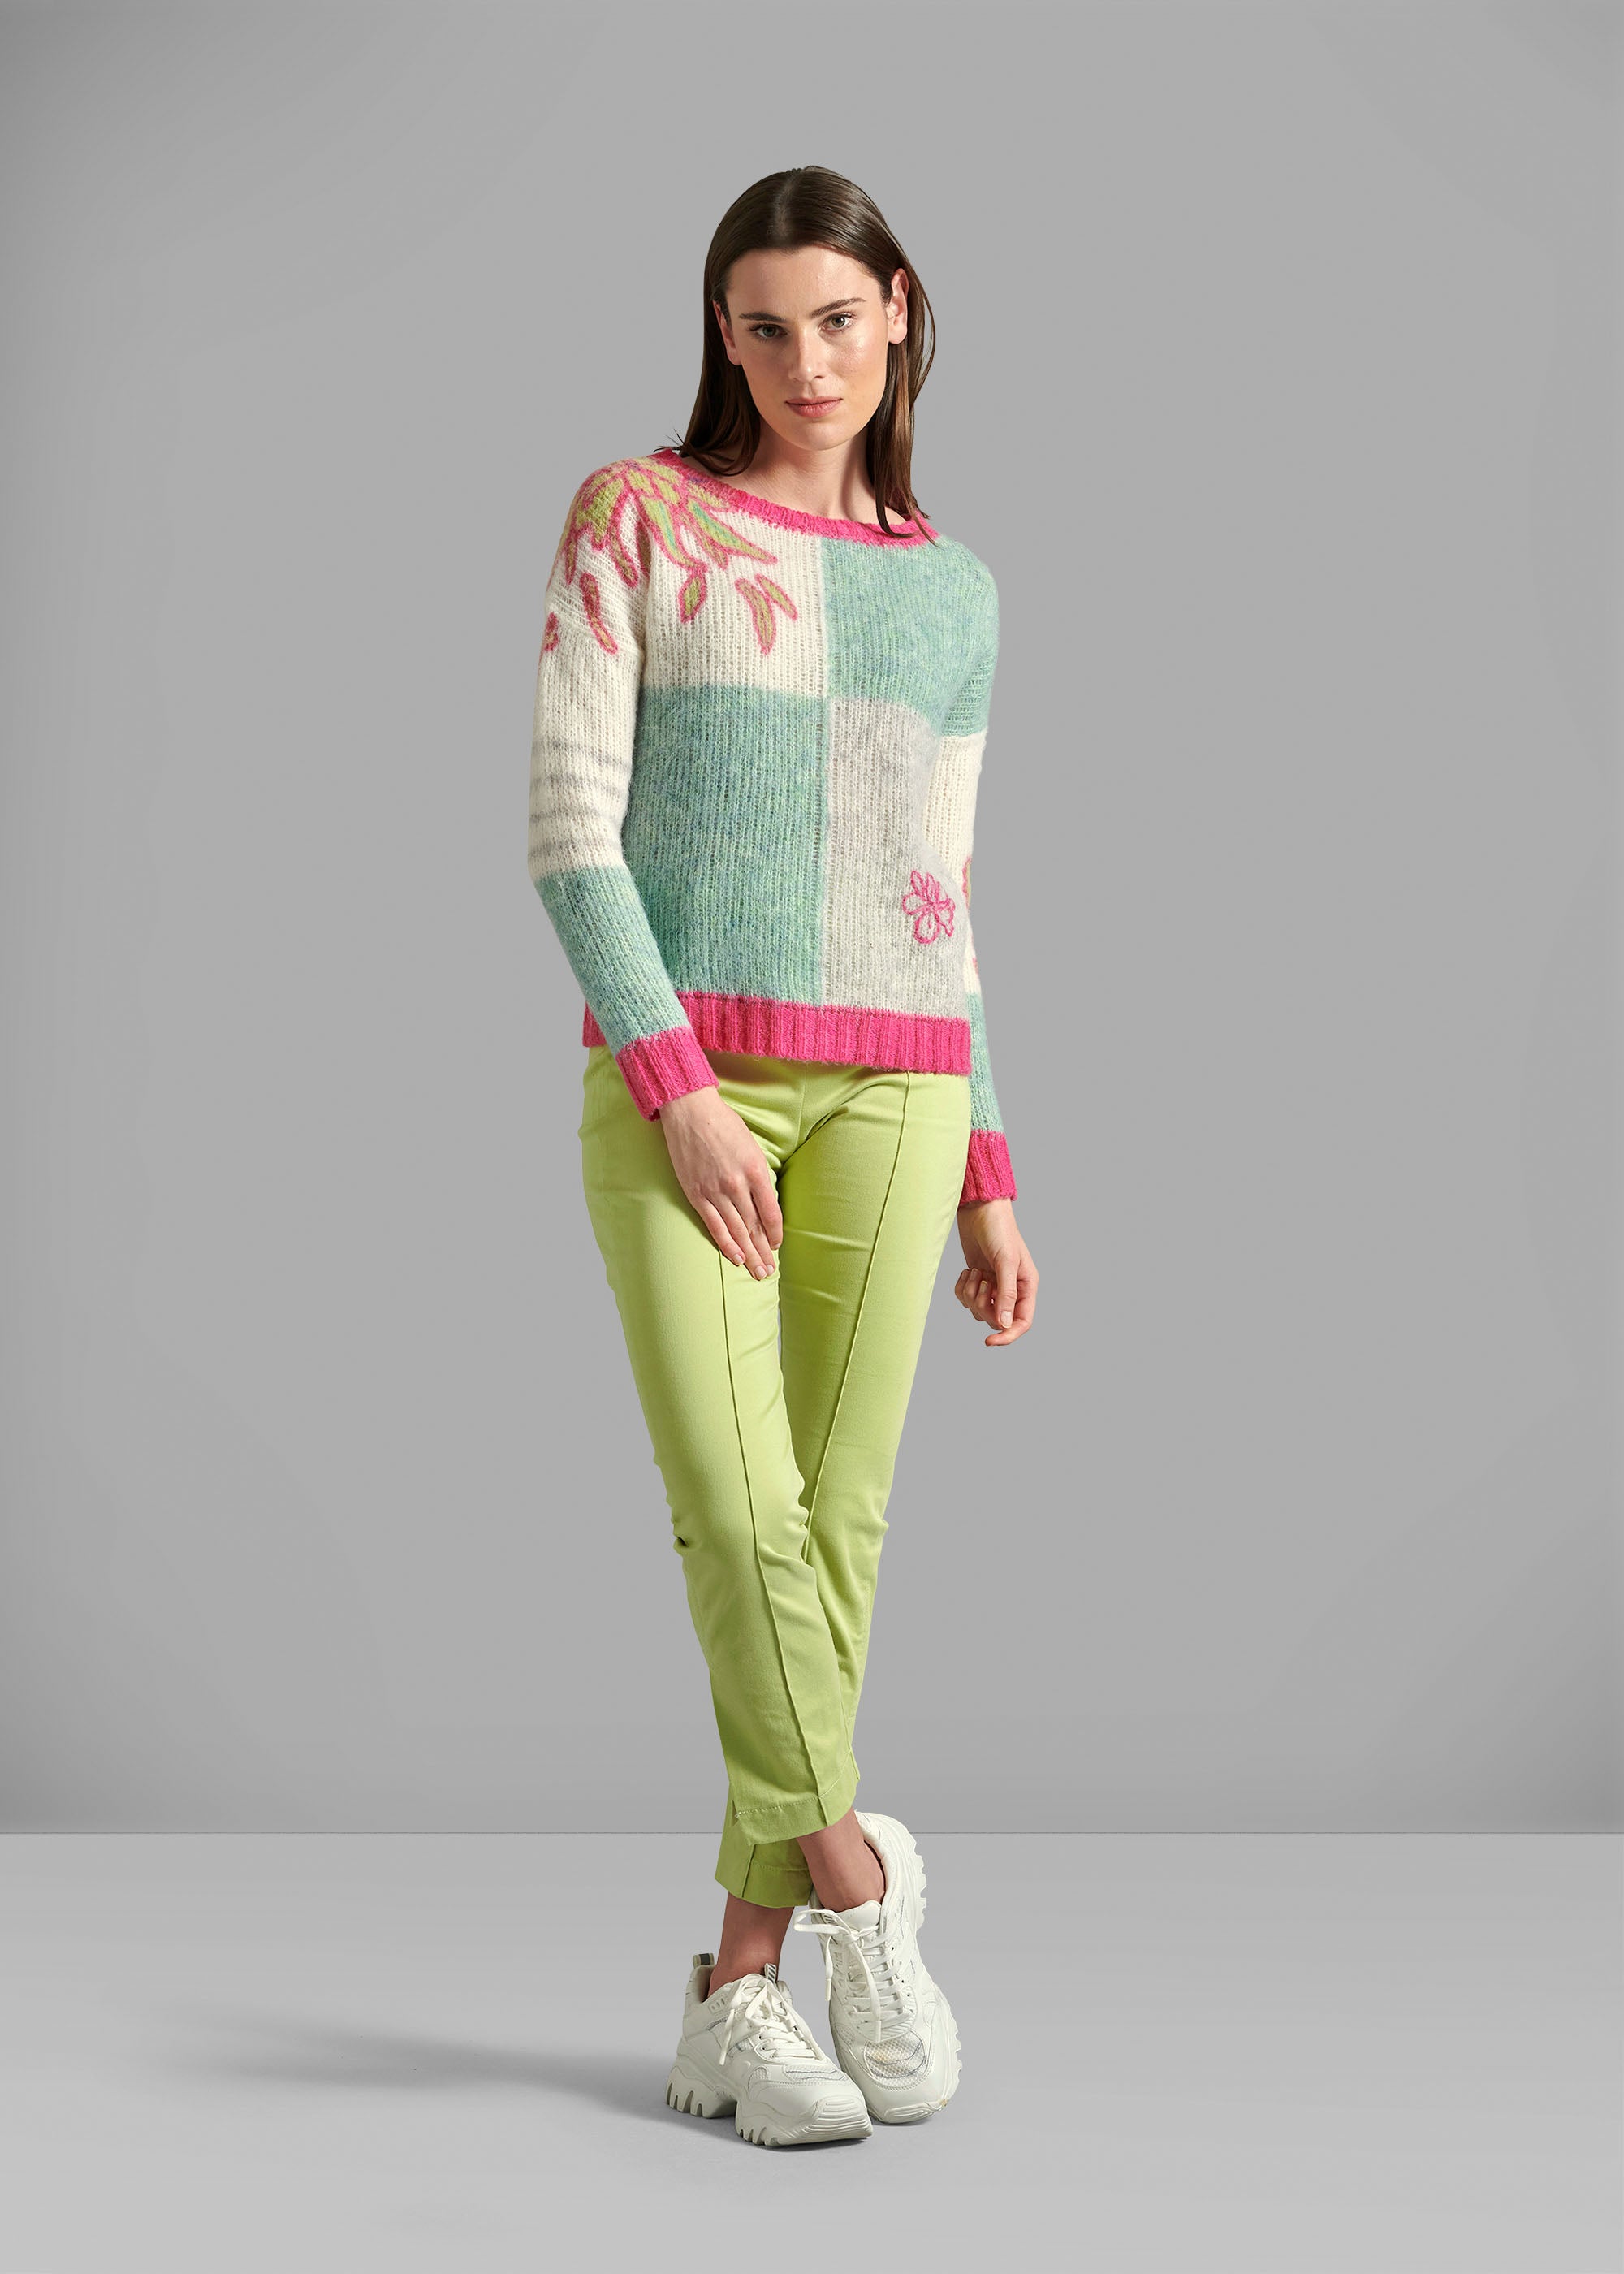 Pullover Modell "Berta"